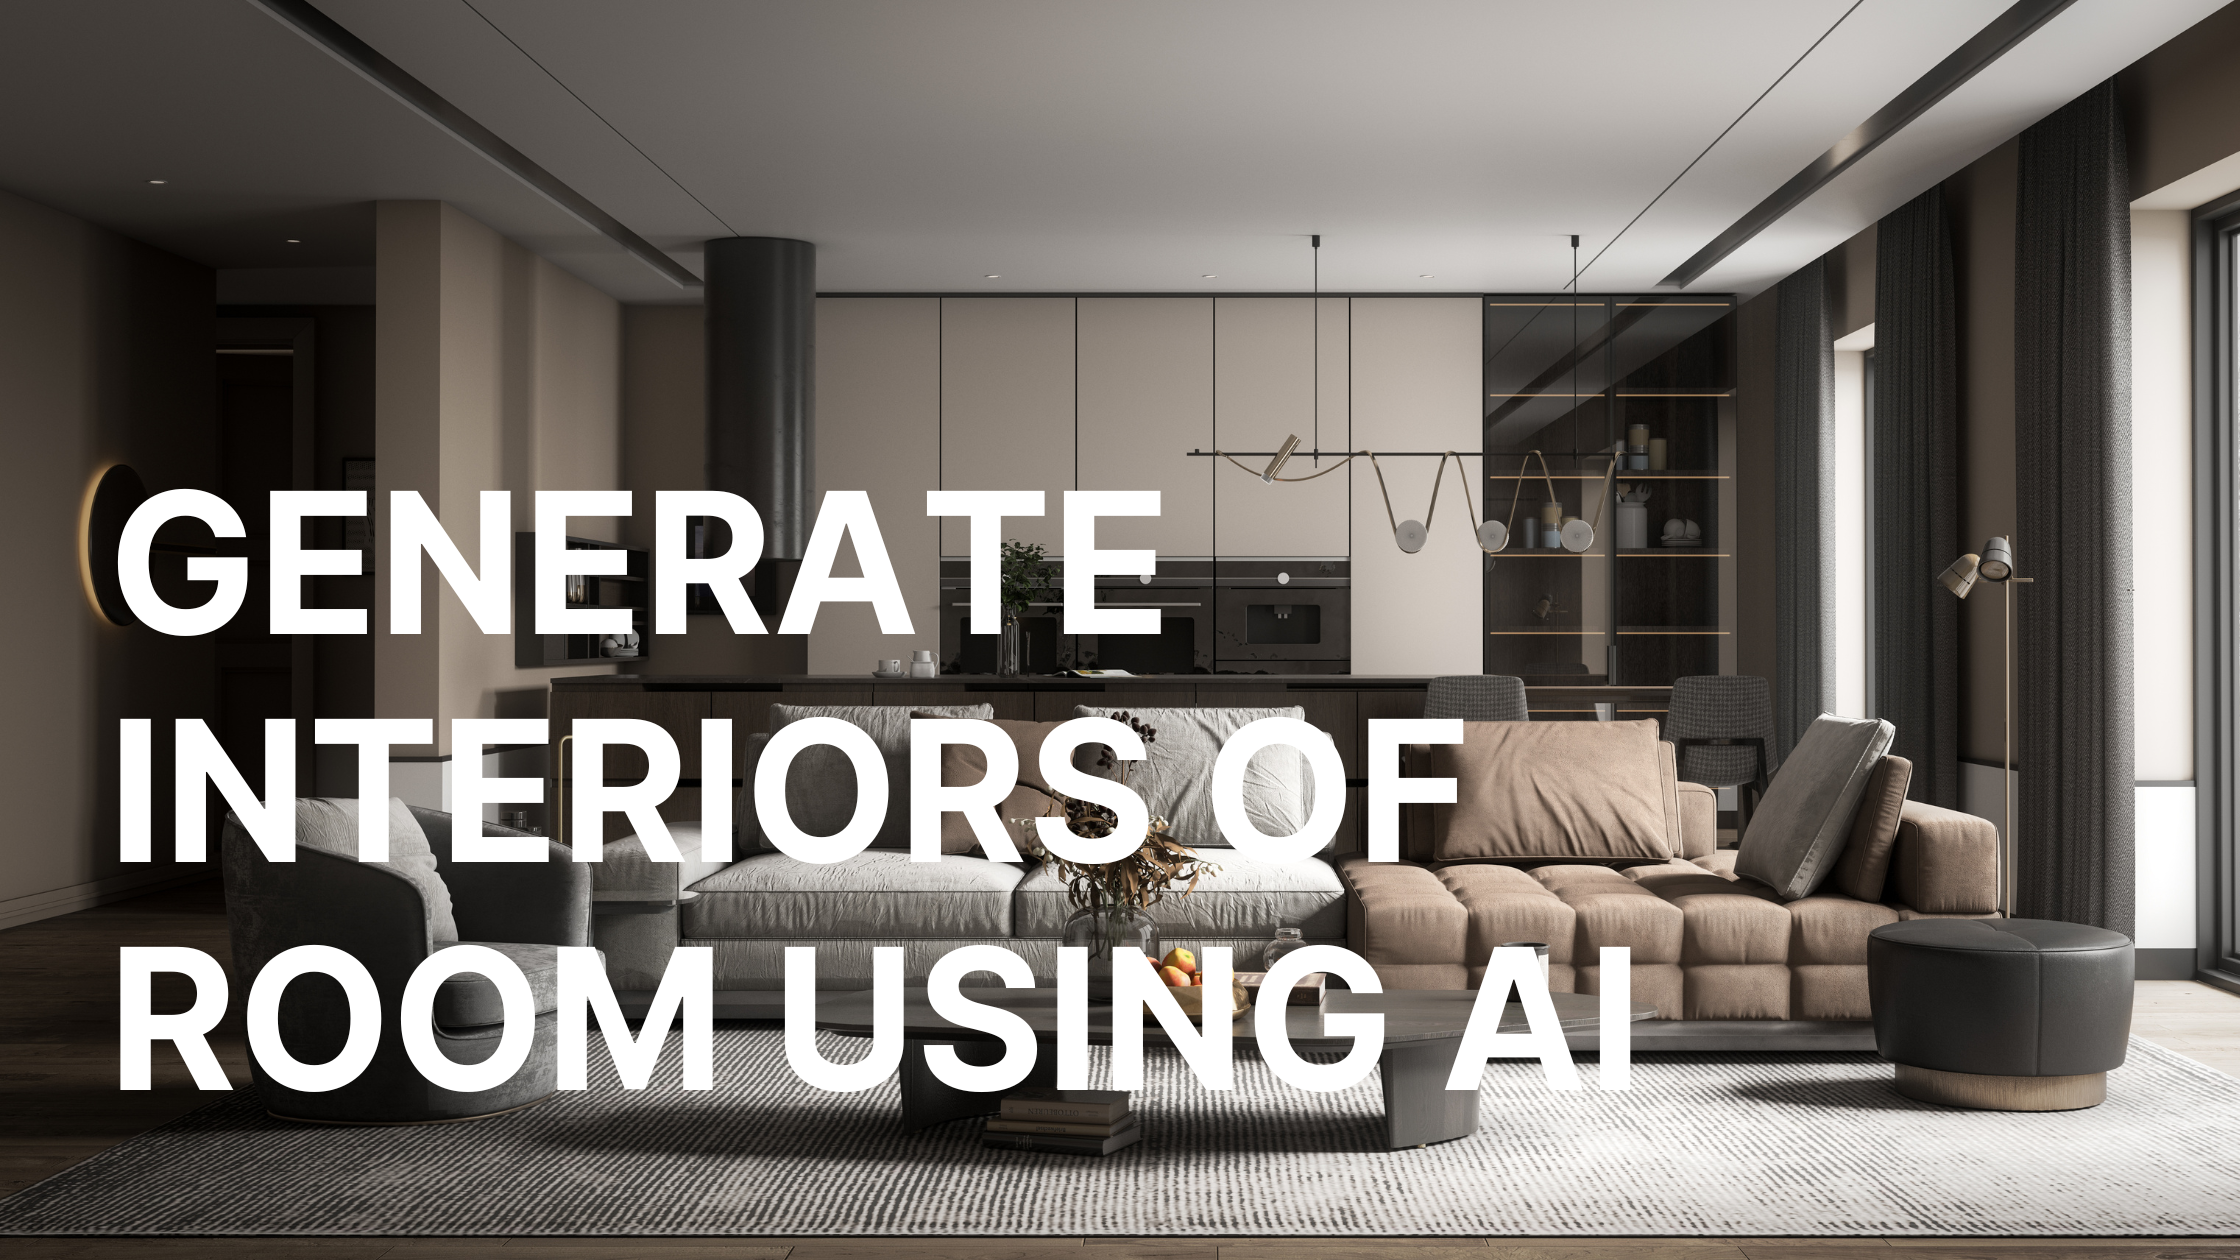 Generate Interiors of Room using AI